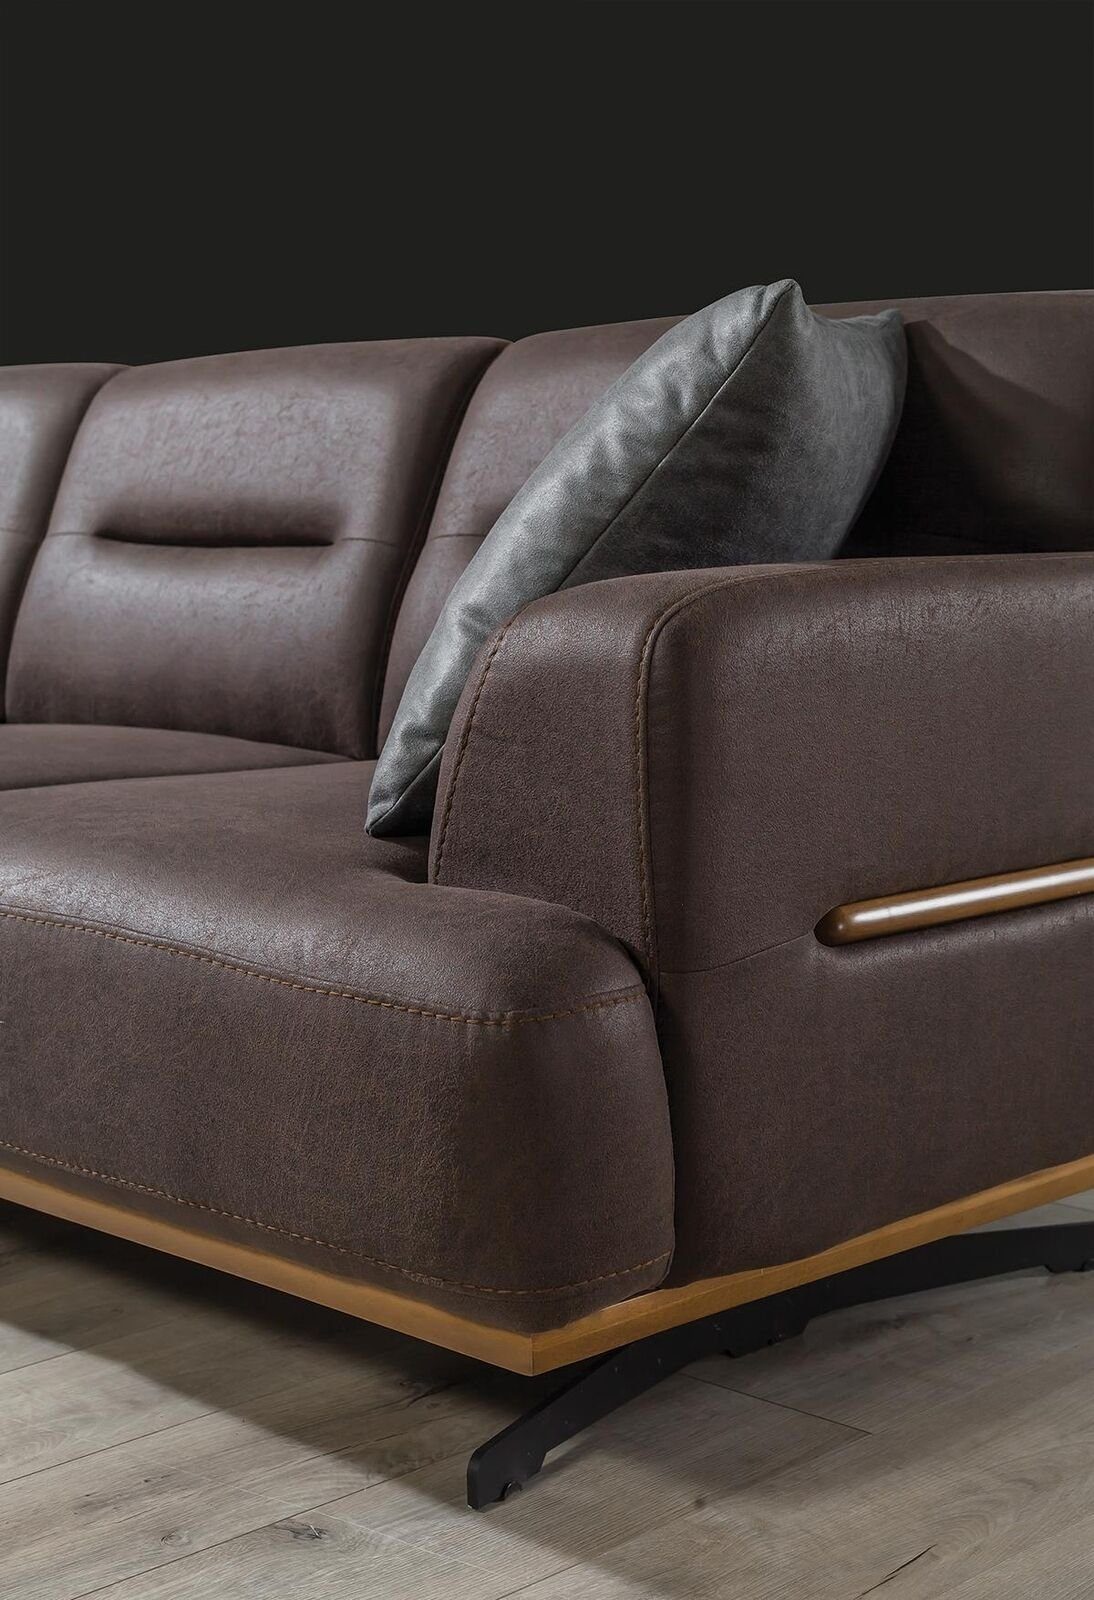 3 Teile, Sitz Sofa Couch Made Modern in Dreisitzer, Sitzpolster 1 Sofa Möbel Leder Braun JVmoebel Europa